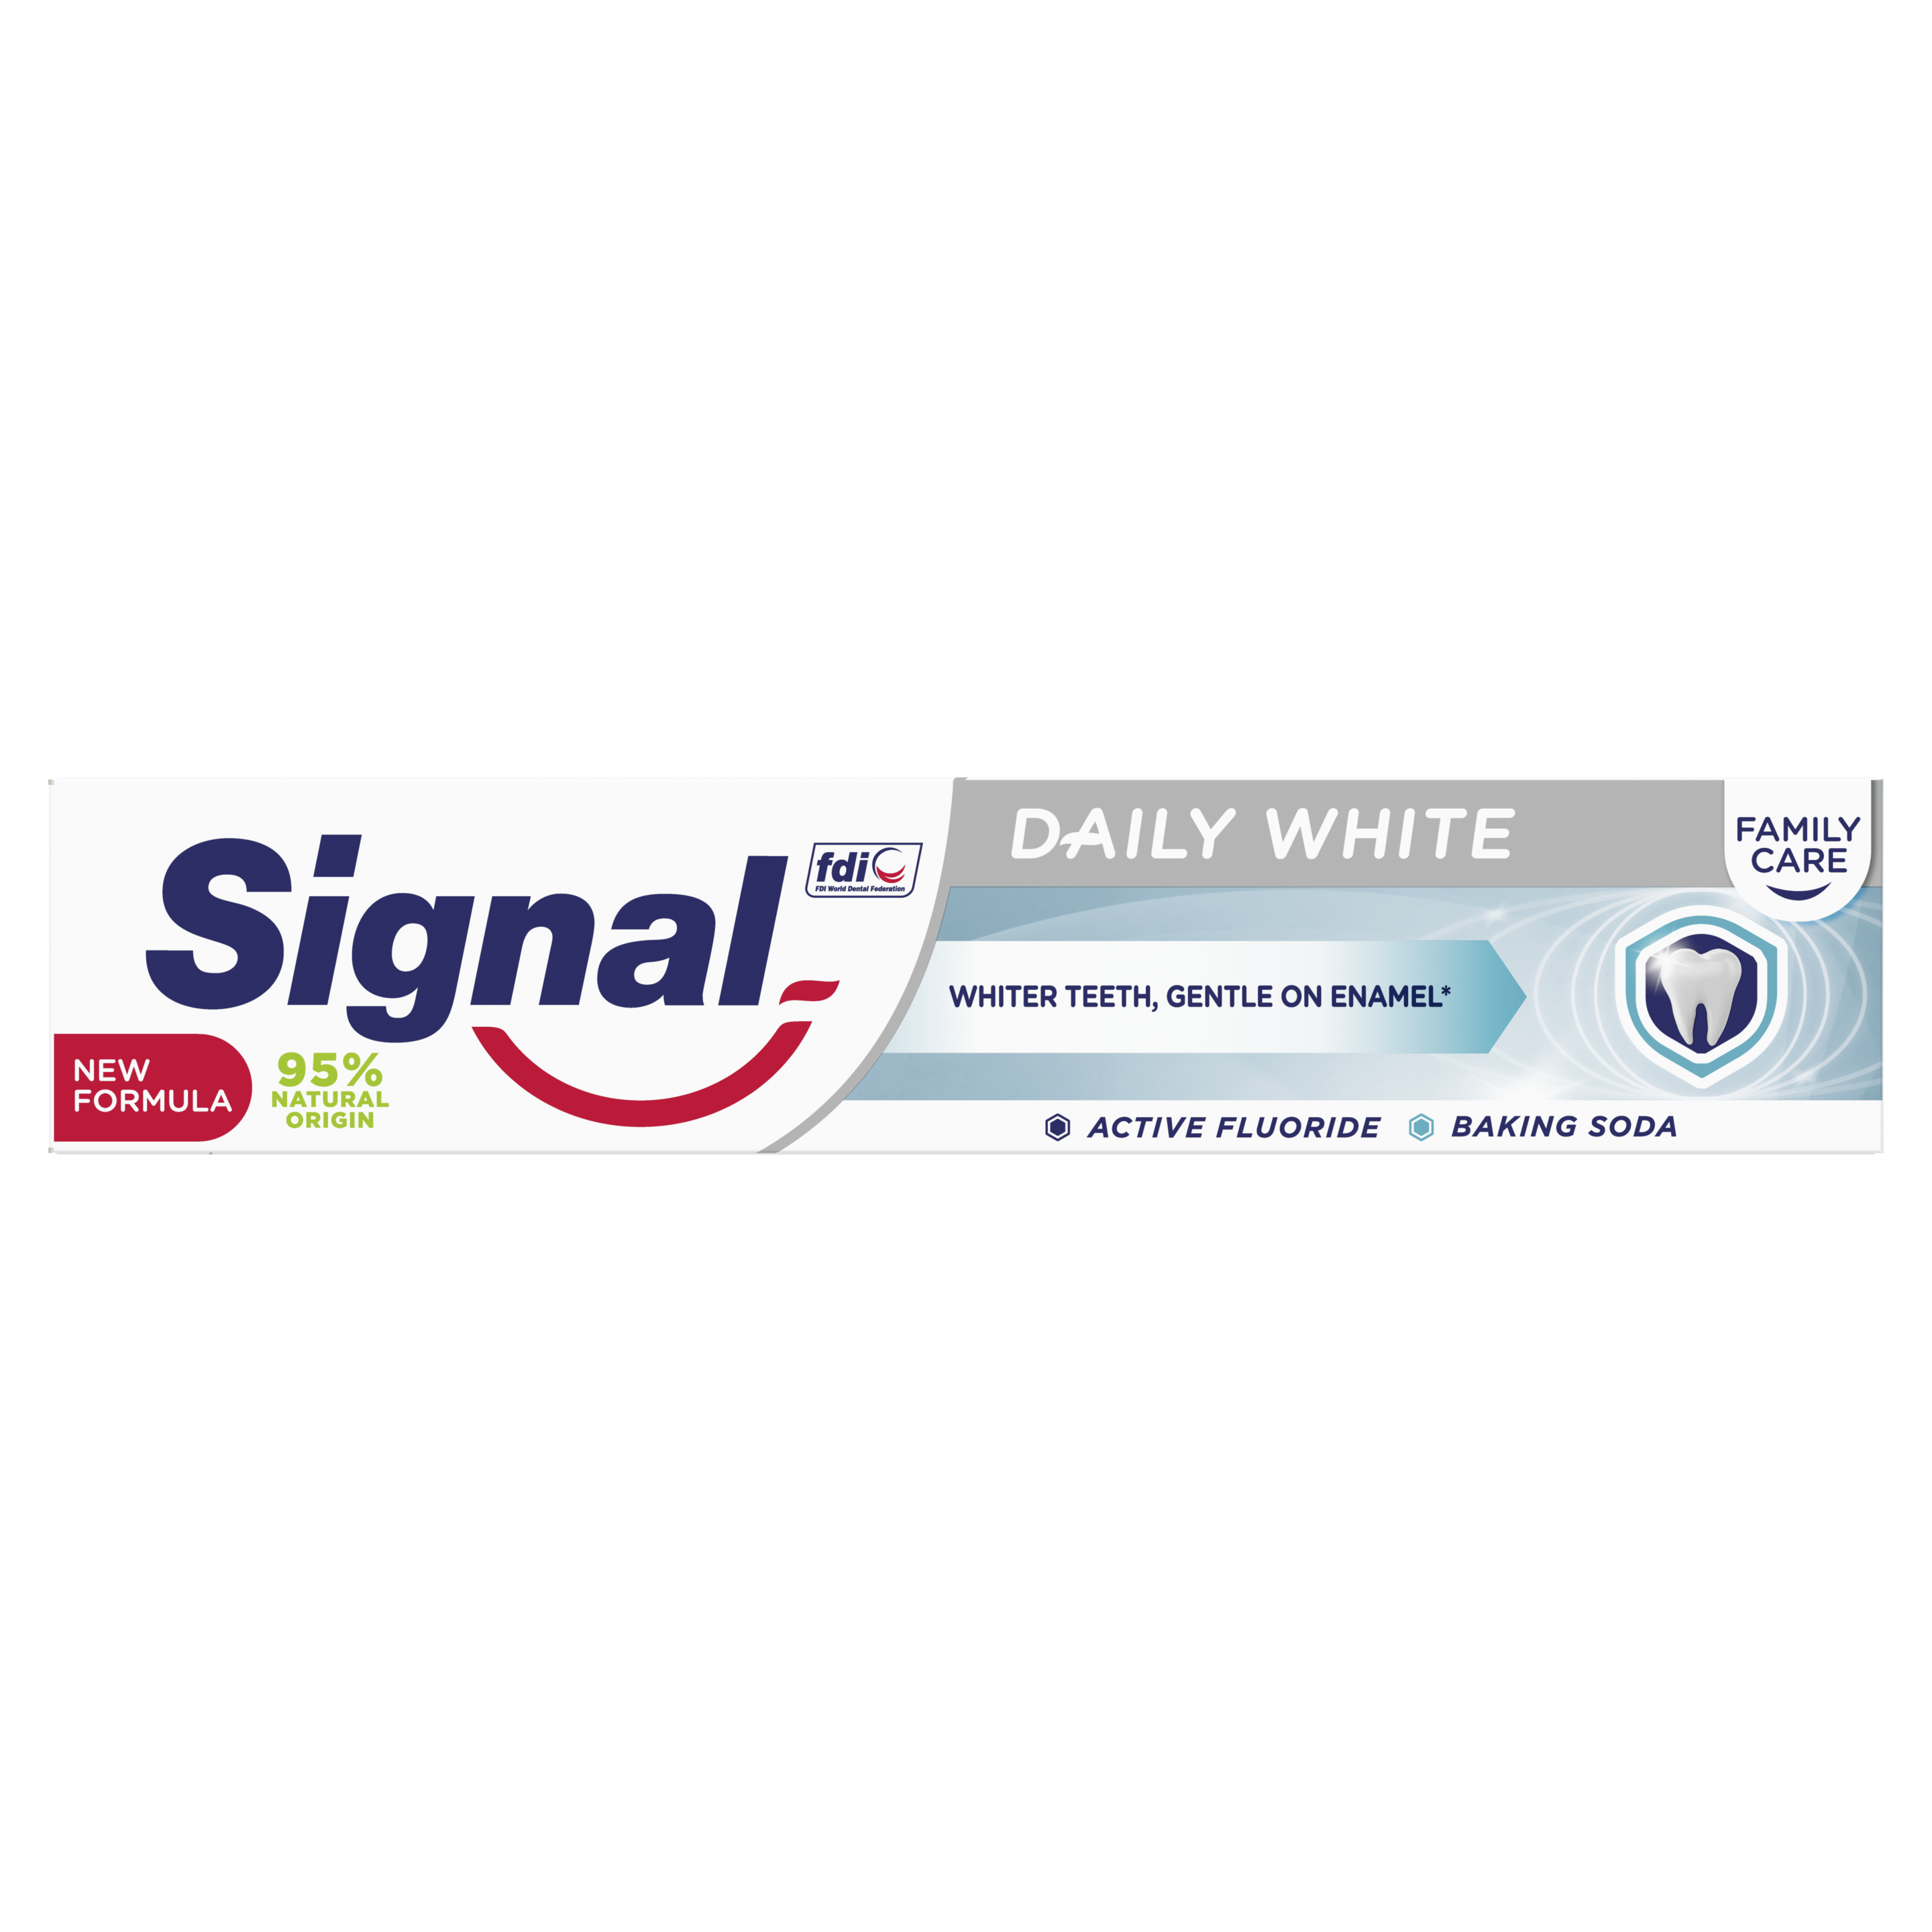 Signal Family Care Daily White fogkrém 75 ml